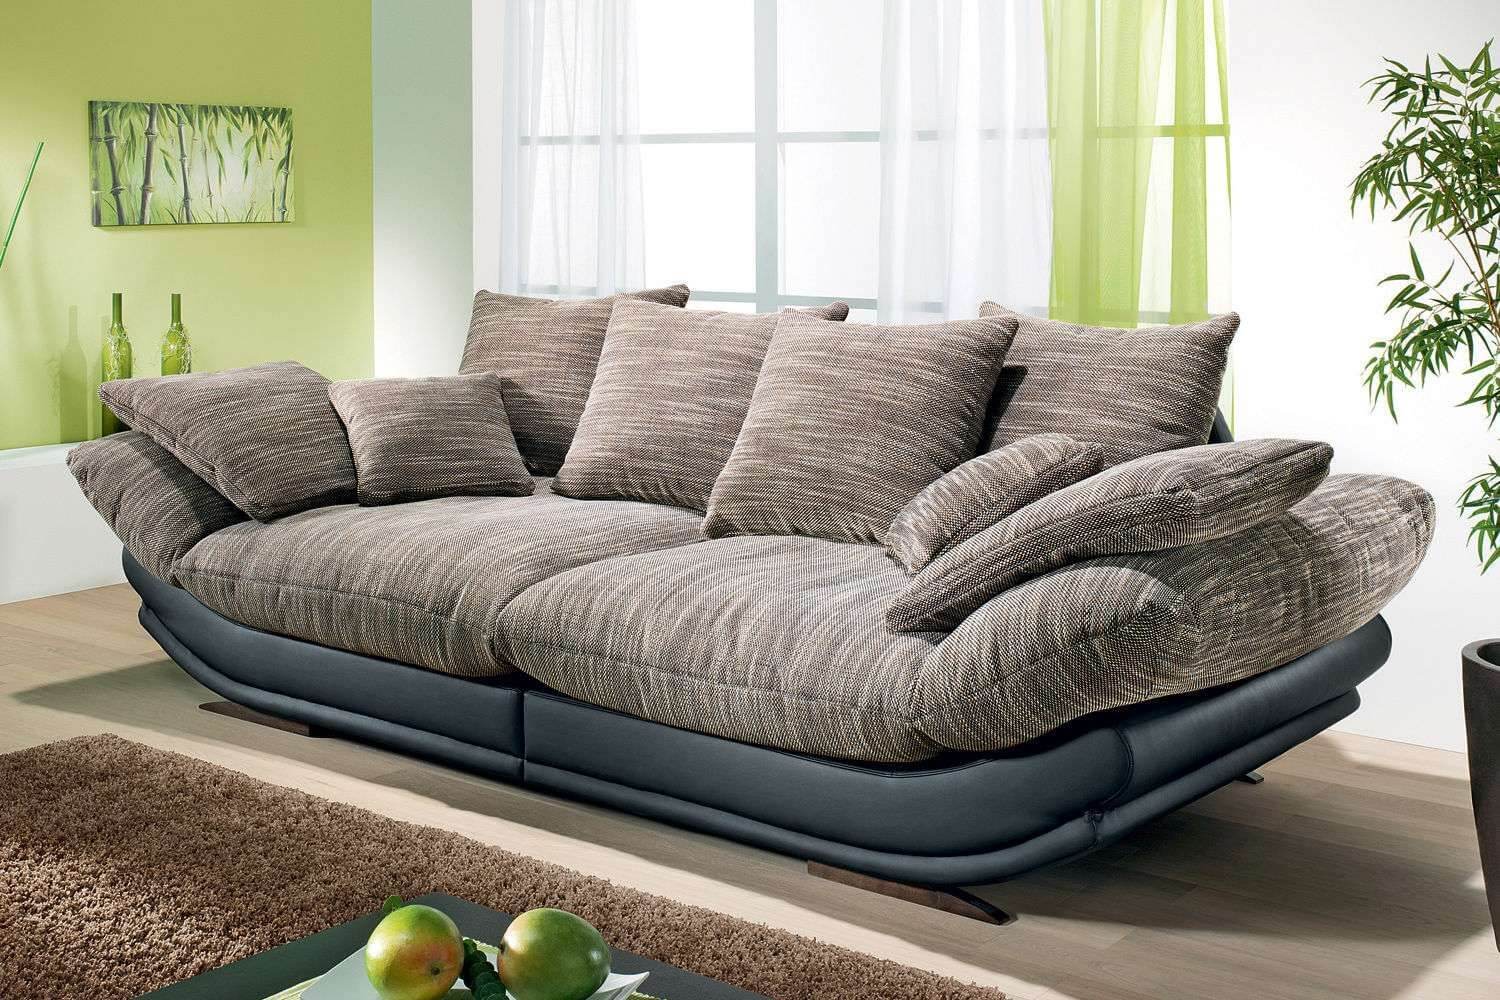 Купить диван для гостиной в москве. Авиньон макси диван. Красивый стильный диван. Современный мягкий диван. Красивые диваны для гостиной.